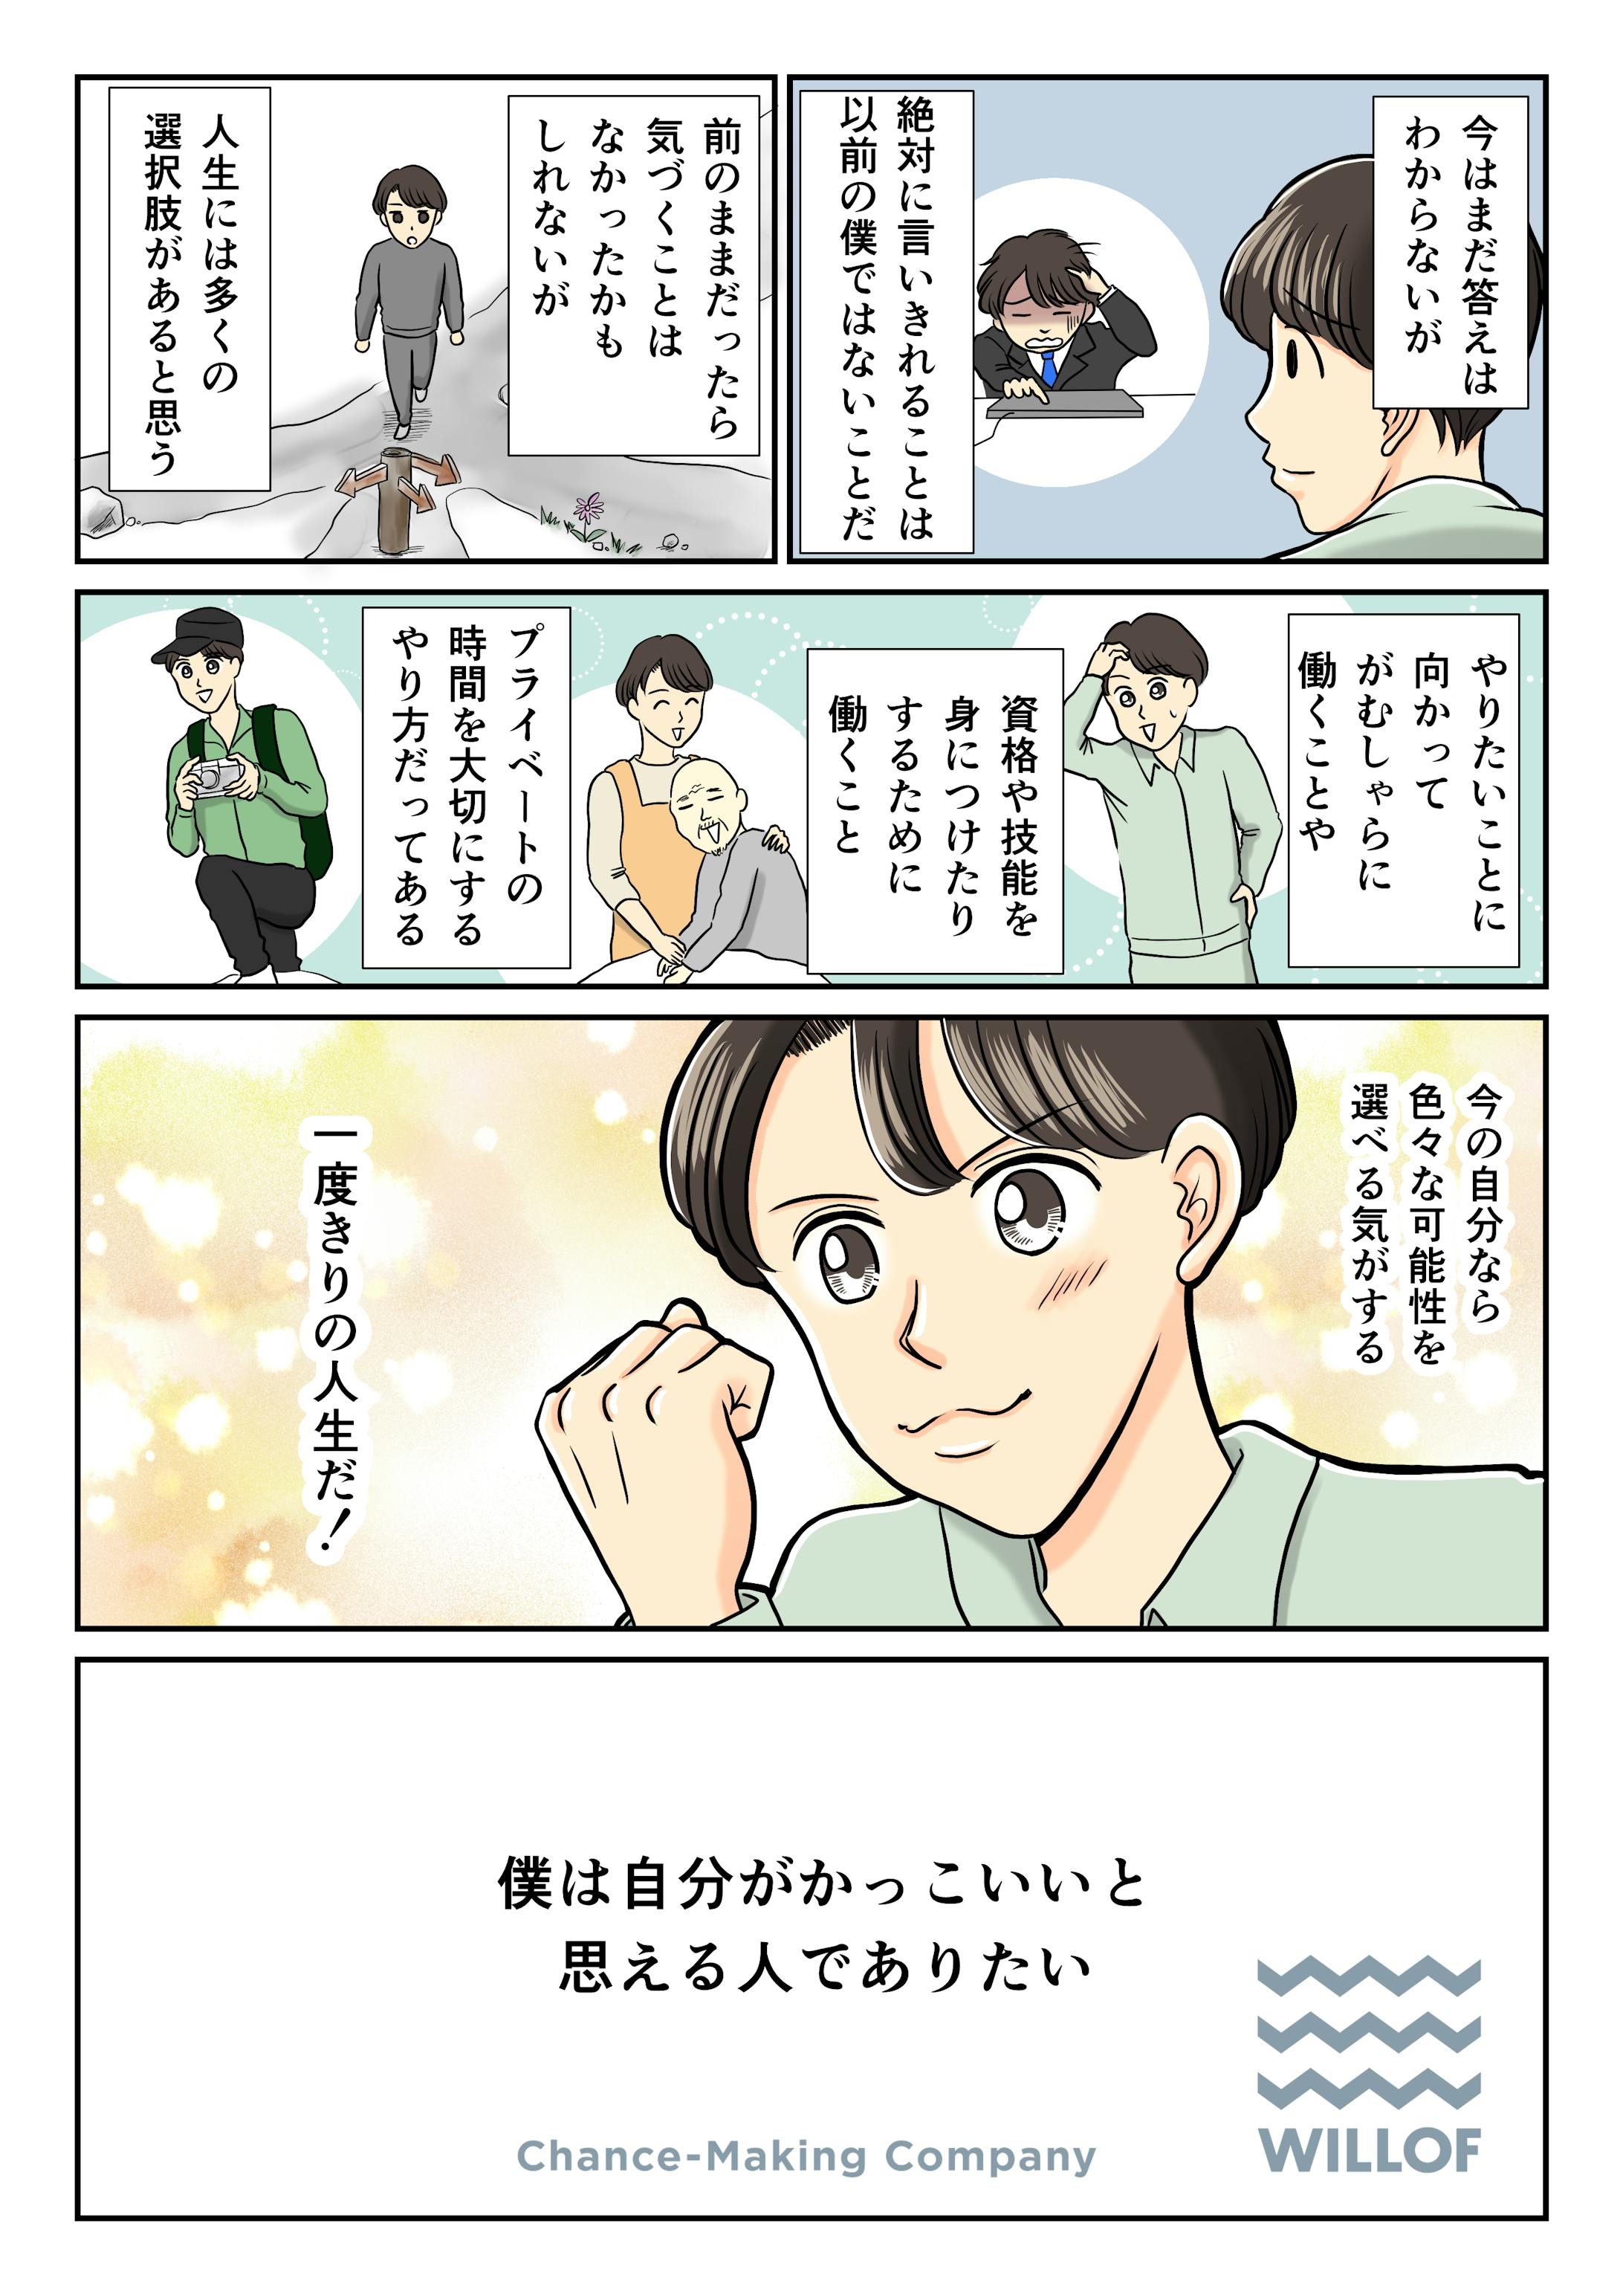 株式会社ウィルオブ・ワーク様　記事広告用漫画-5